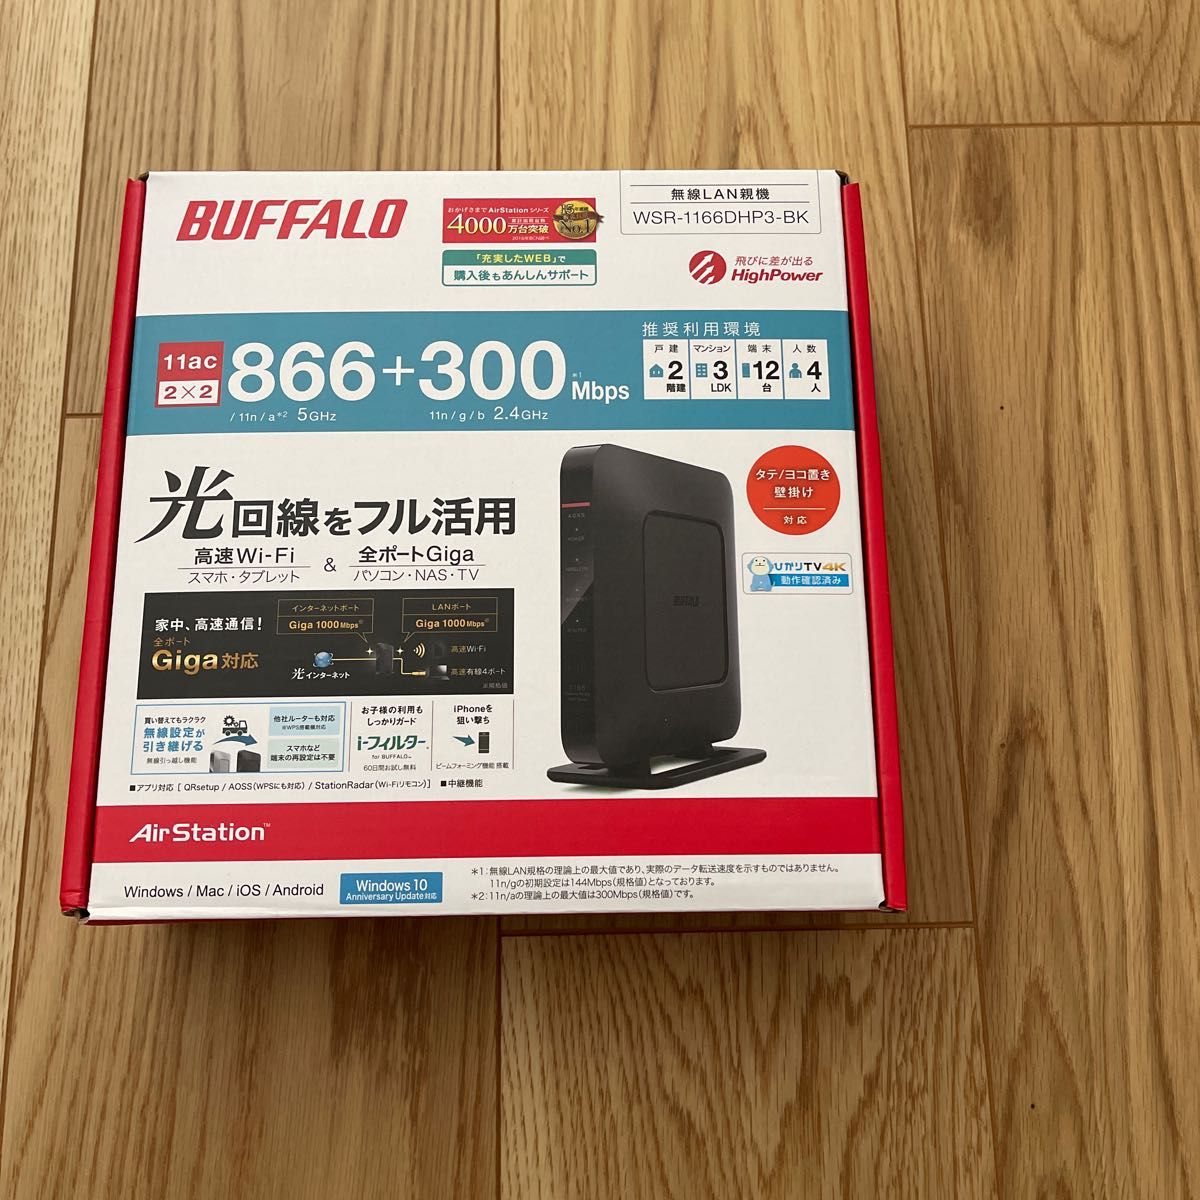 BUFFALO 無線LAN親機 WiFi Wi-Fiルーター